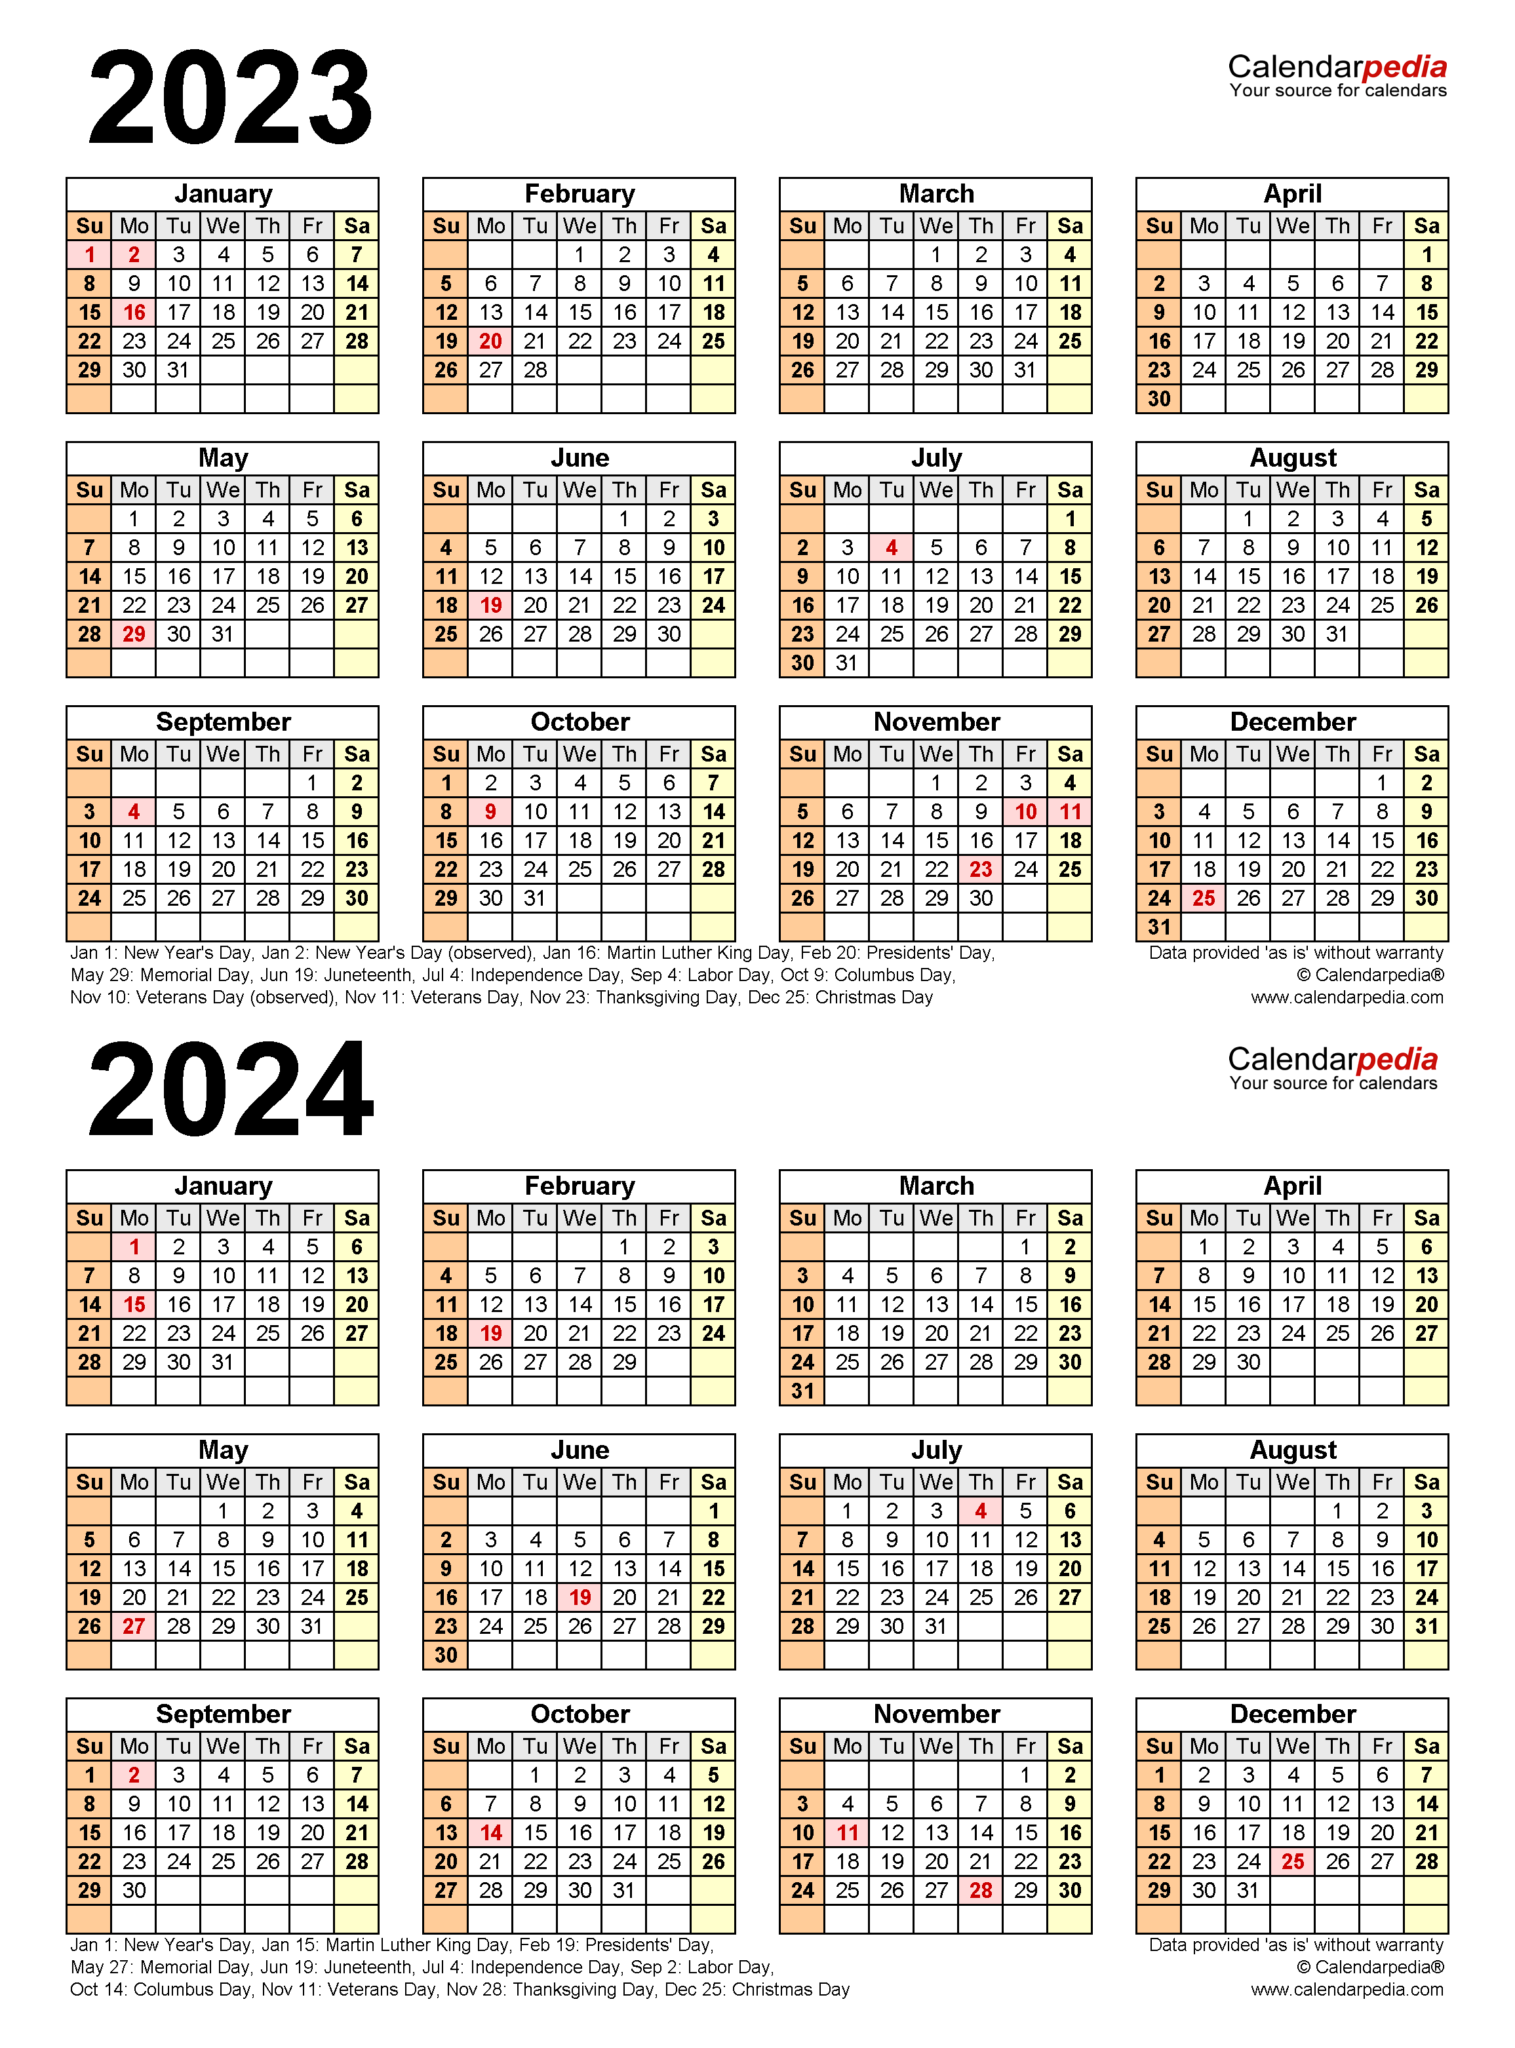 Incredible Blinn Academic Calendar 2023 2024 Images Calendar Ideas 2023 - Universitycalendars.net